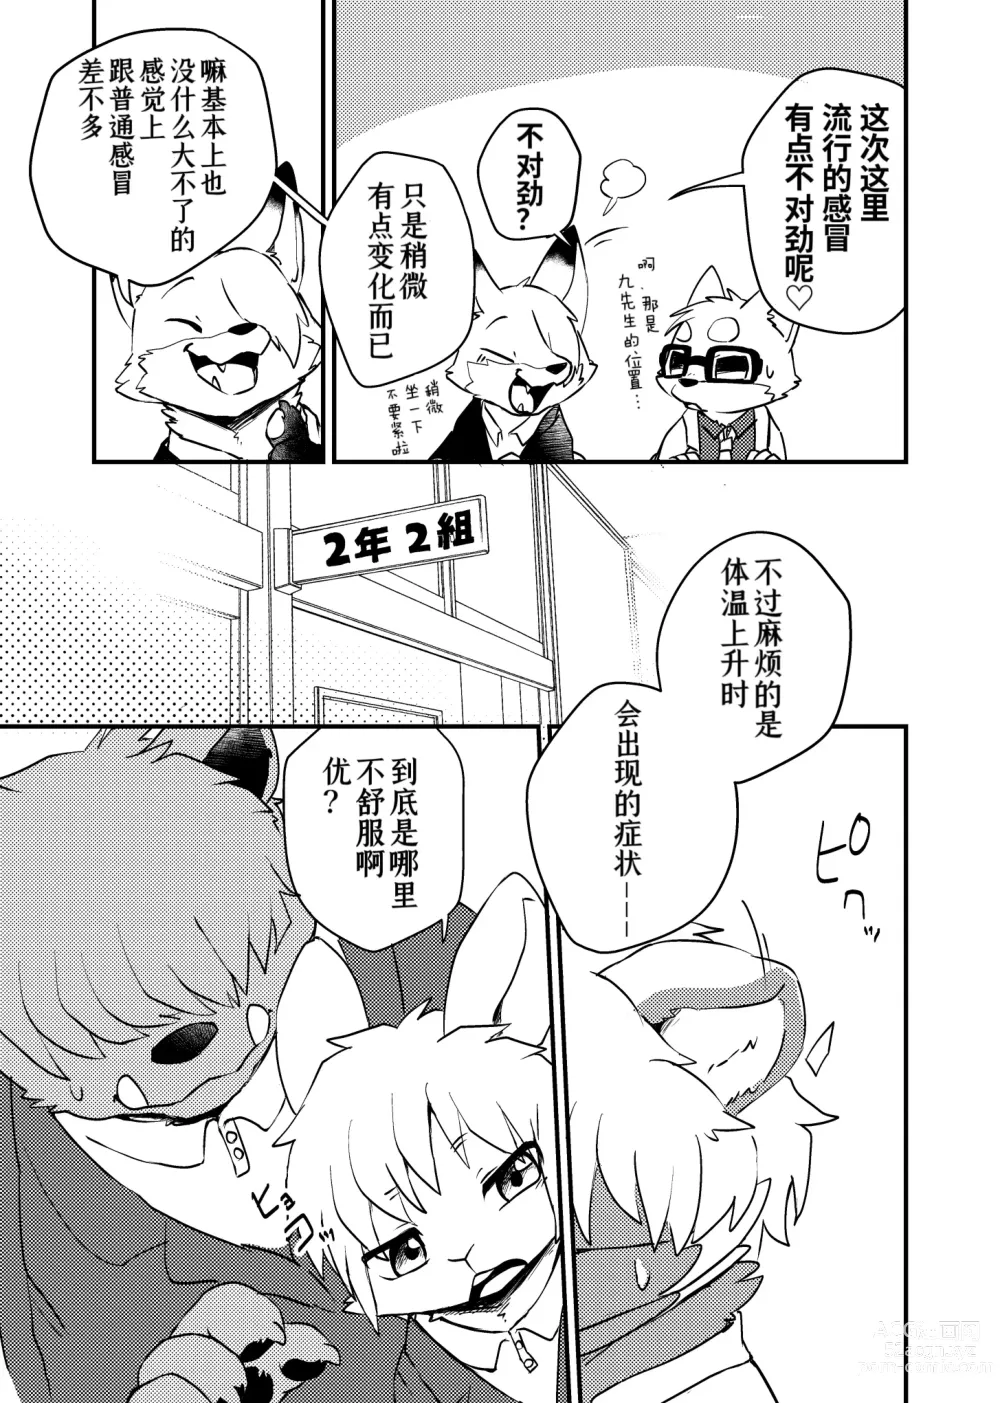 Page 7 of doujinshi 老师和我。流行性感冒务必要注意哦！？